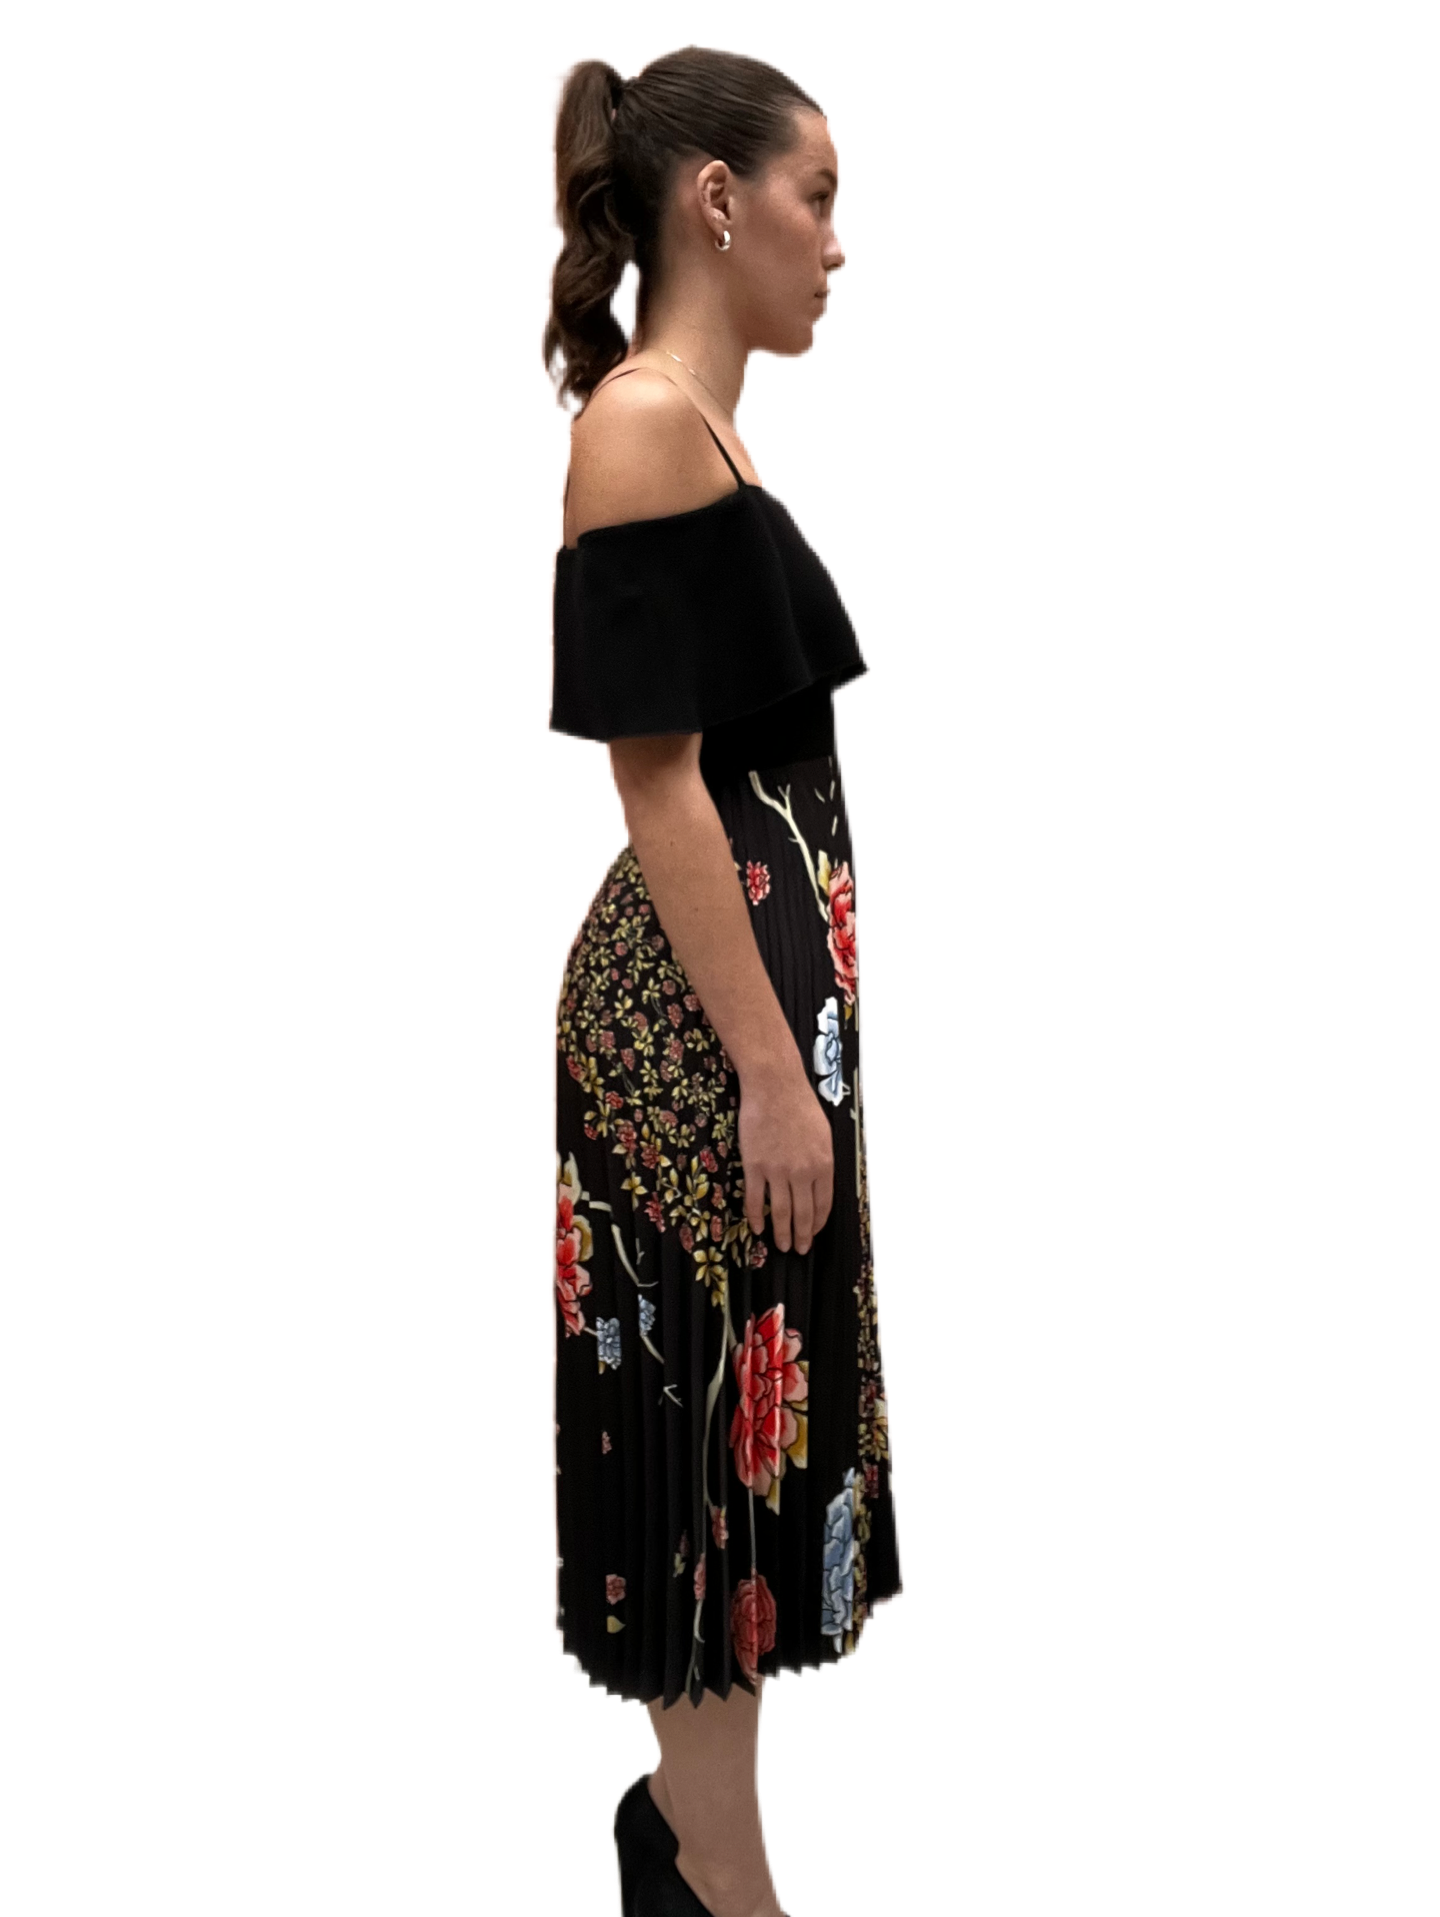 Victoria Beckham Black & Floral Dress w Pleats. Size: 8